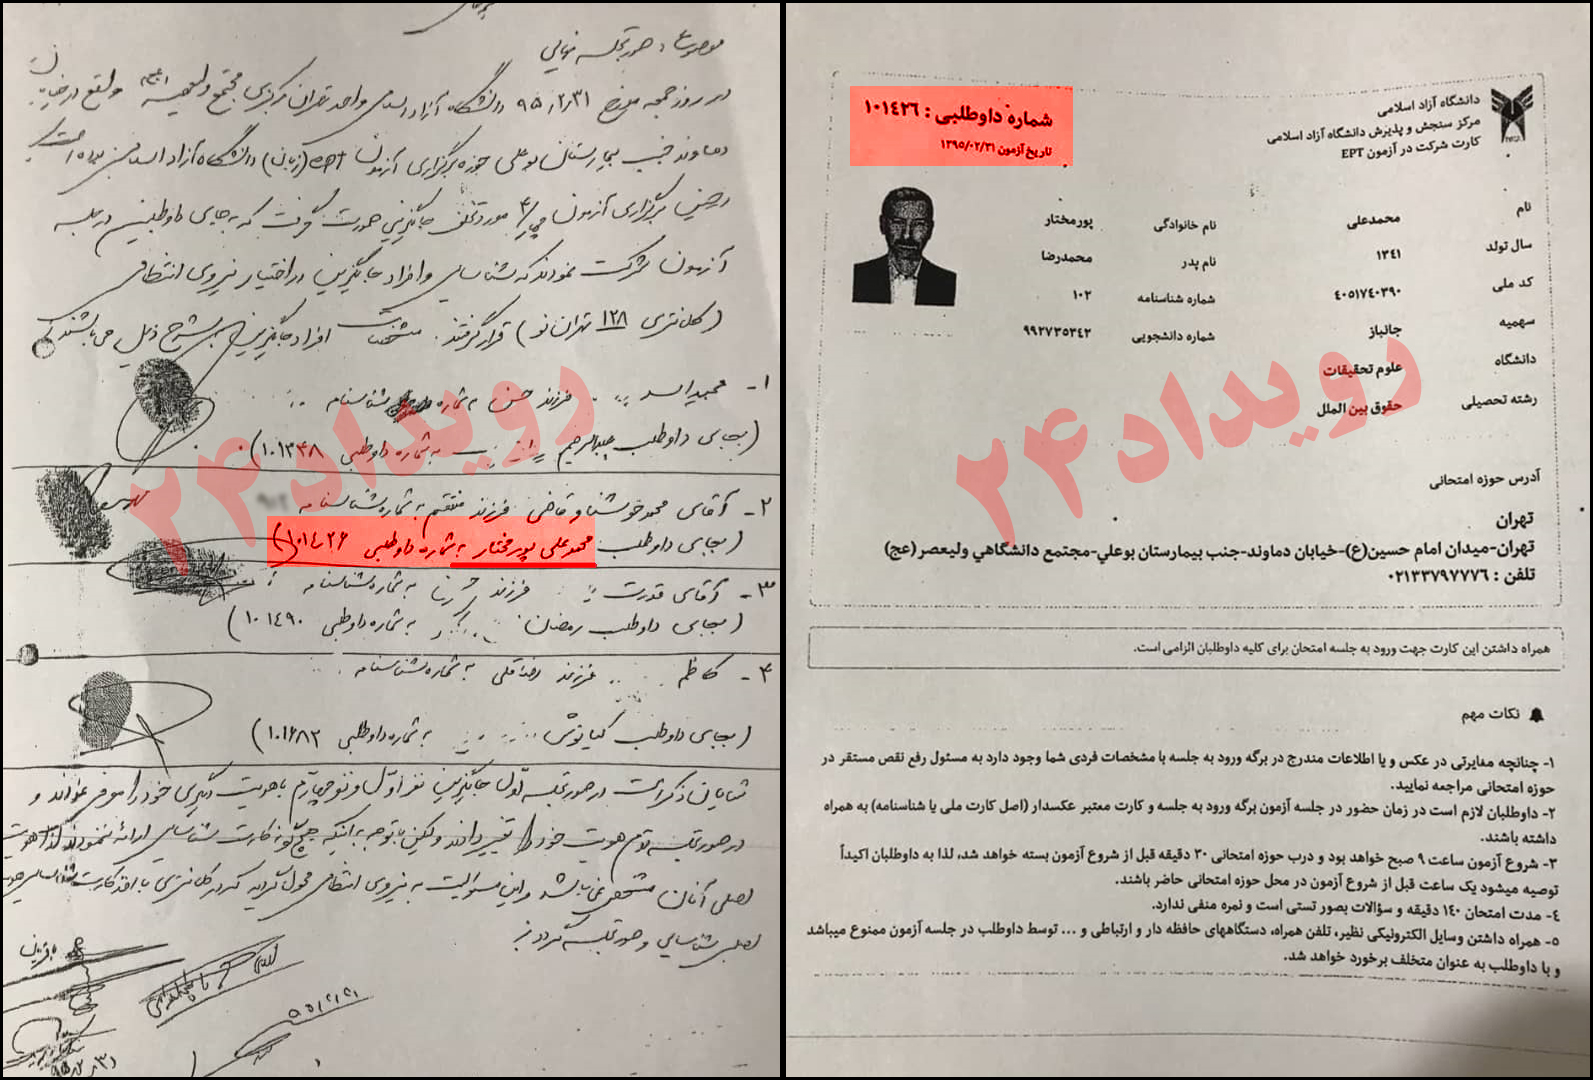 بر اساس اسناد منتشر شده، محمد علی پورمختار نماینده سابق مجلس شورای اسلامی در امتحان ورودی دانشگاه آزاد در مقطع دکتری مرتکب تقلب شده است.